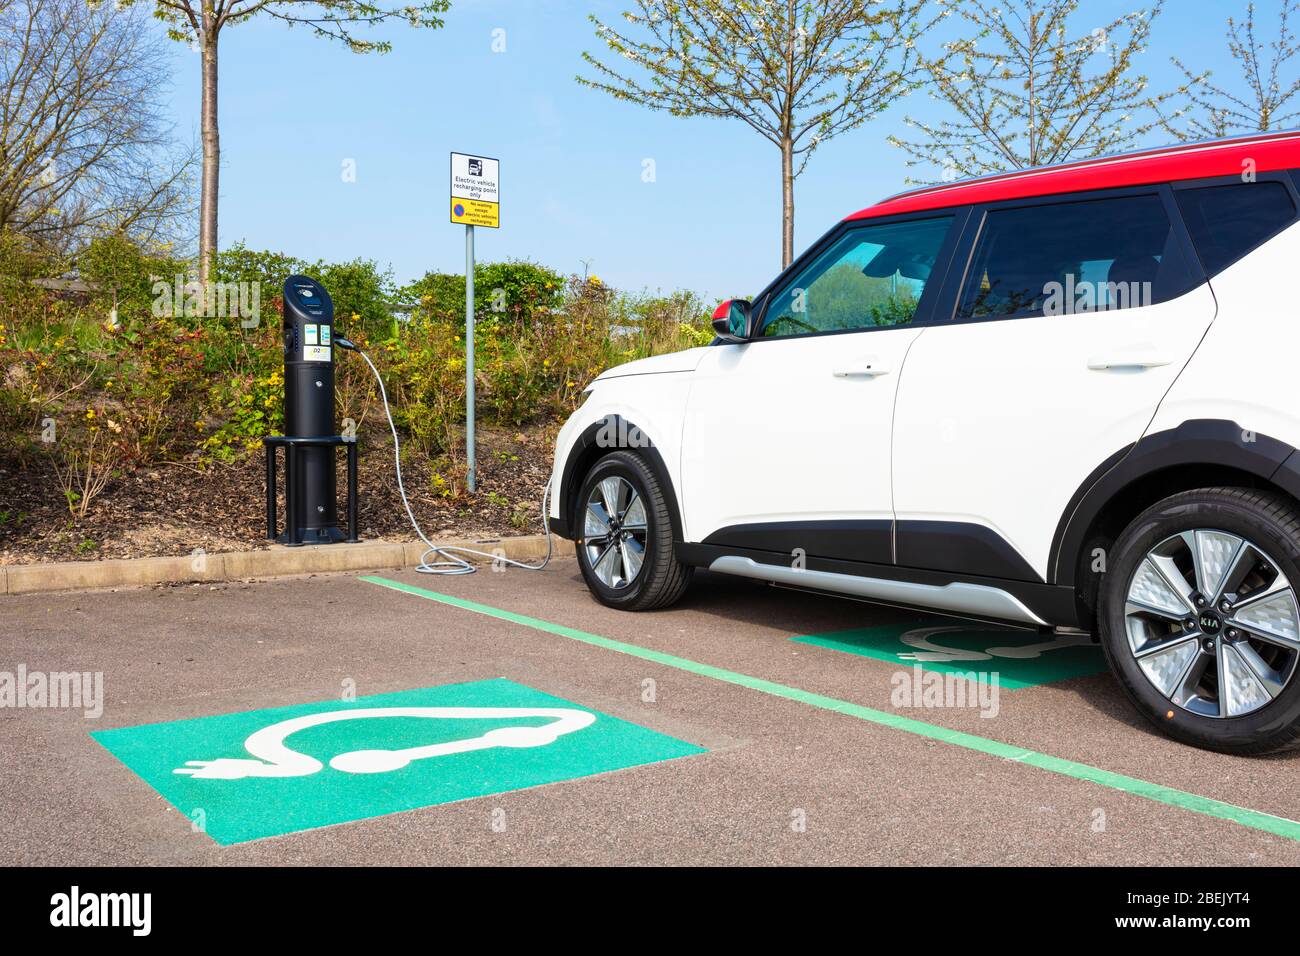 voiture électrique Kia E Soul mars 2020 recharge de voiture électrique à un chargeur de voiture électrique public garée dans la voiture électrique recharge place de parking Royaume-Uni Banque D'Images